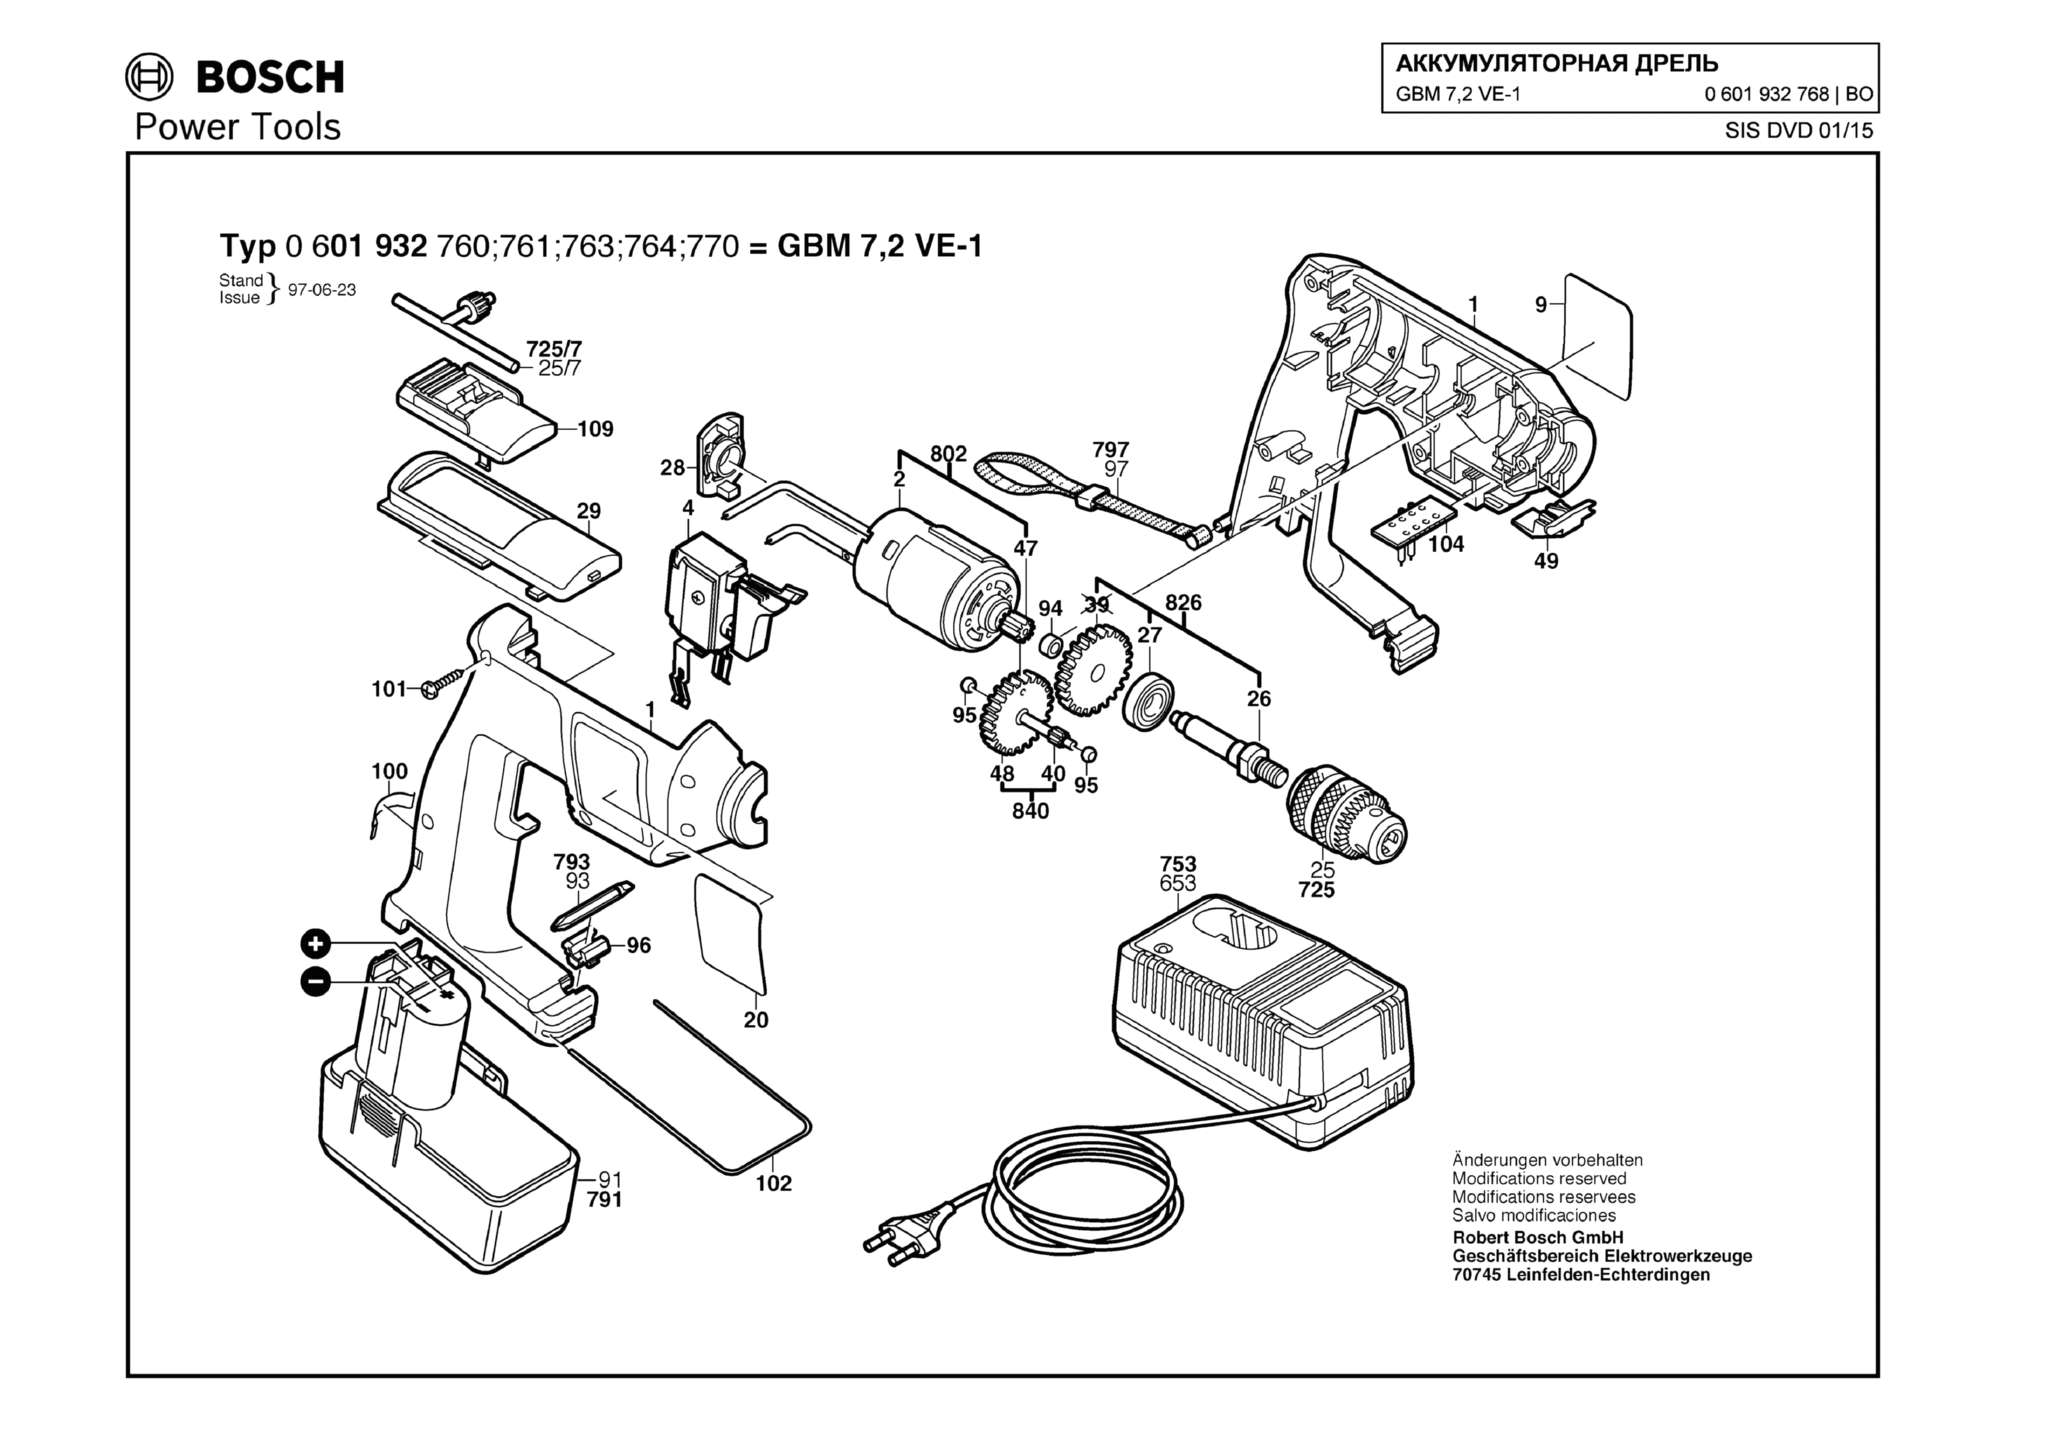 Запчасти, схема и деталировка Bosch GBM 7,2 VE-1 (ТИП 0601932768)